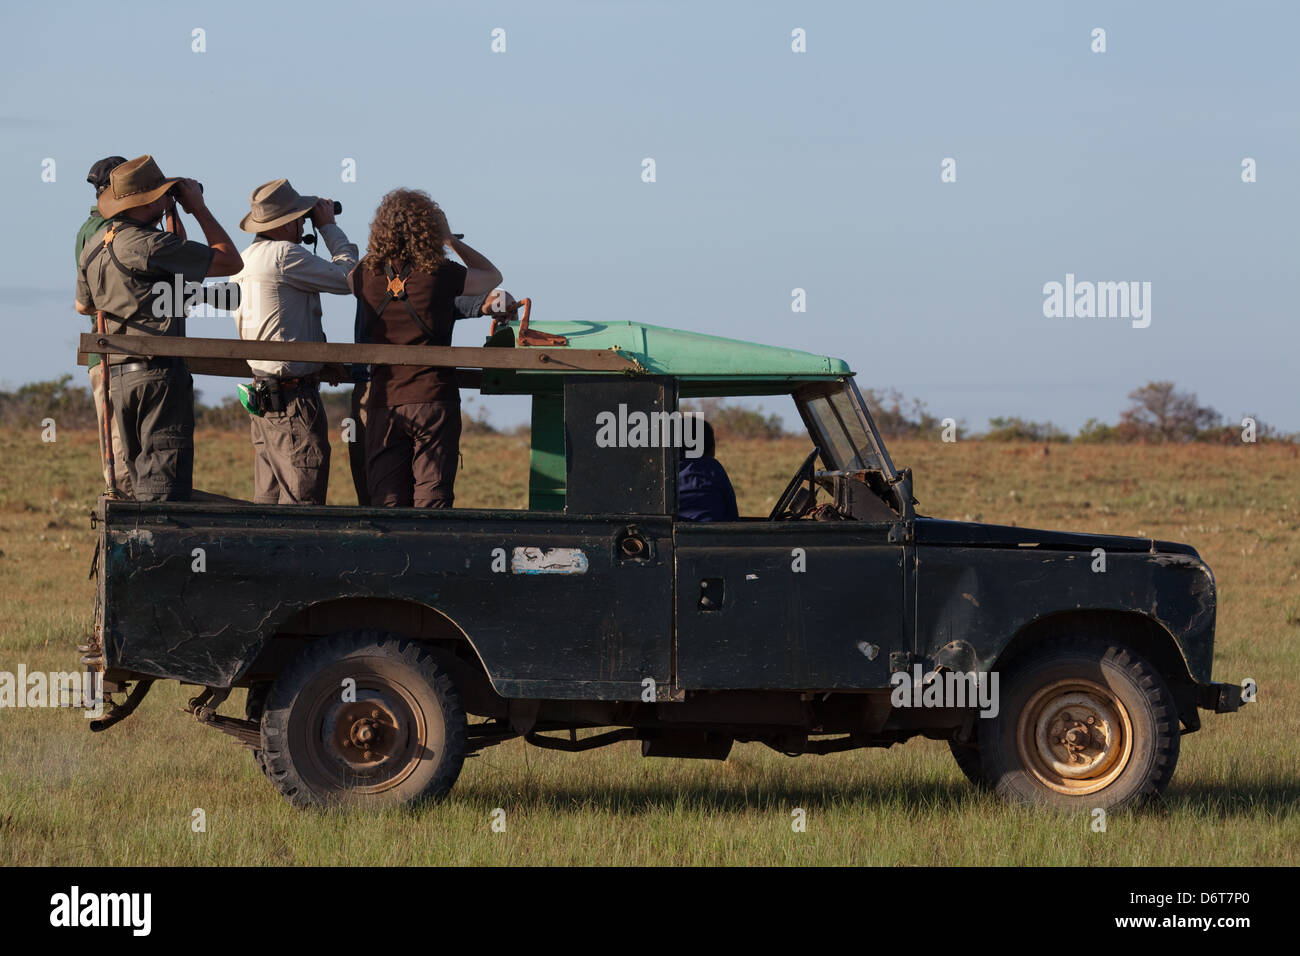 Öko-Touristen in offenen Top vier-Rad-Fahrzeug Scannen Grünland Lebensraum für riesige Ameisenbären. Karanambu, Rupunumi Savanne. Guyana Stockfoto